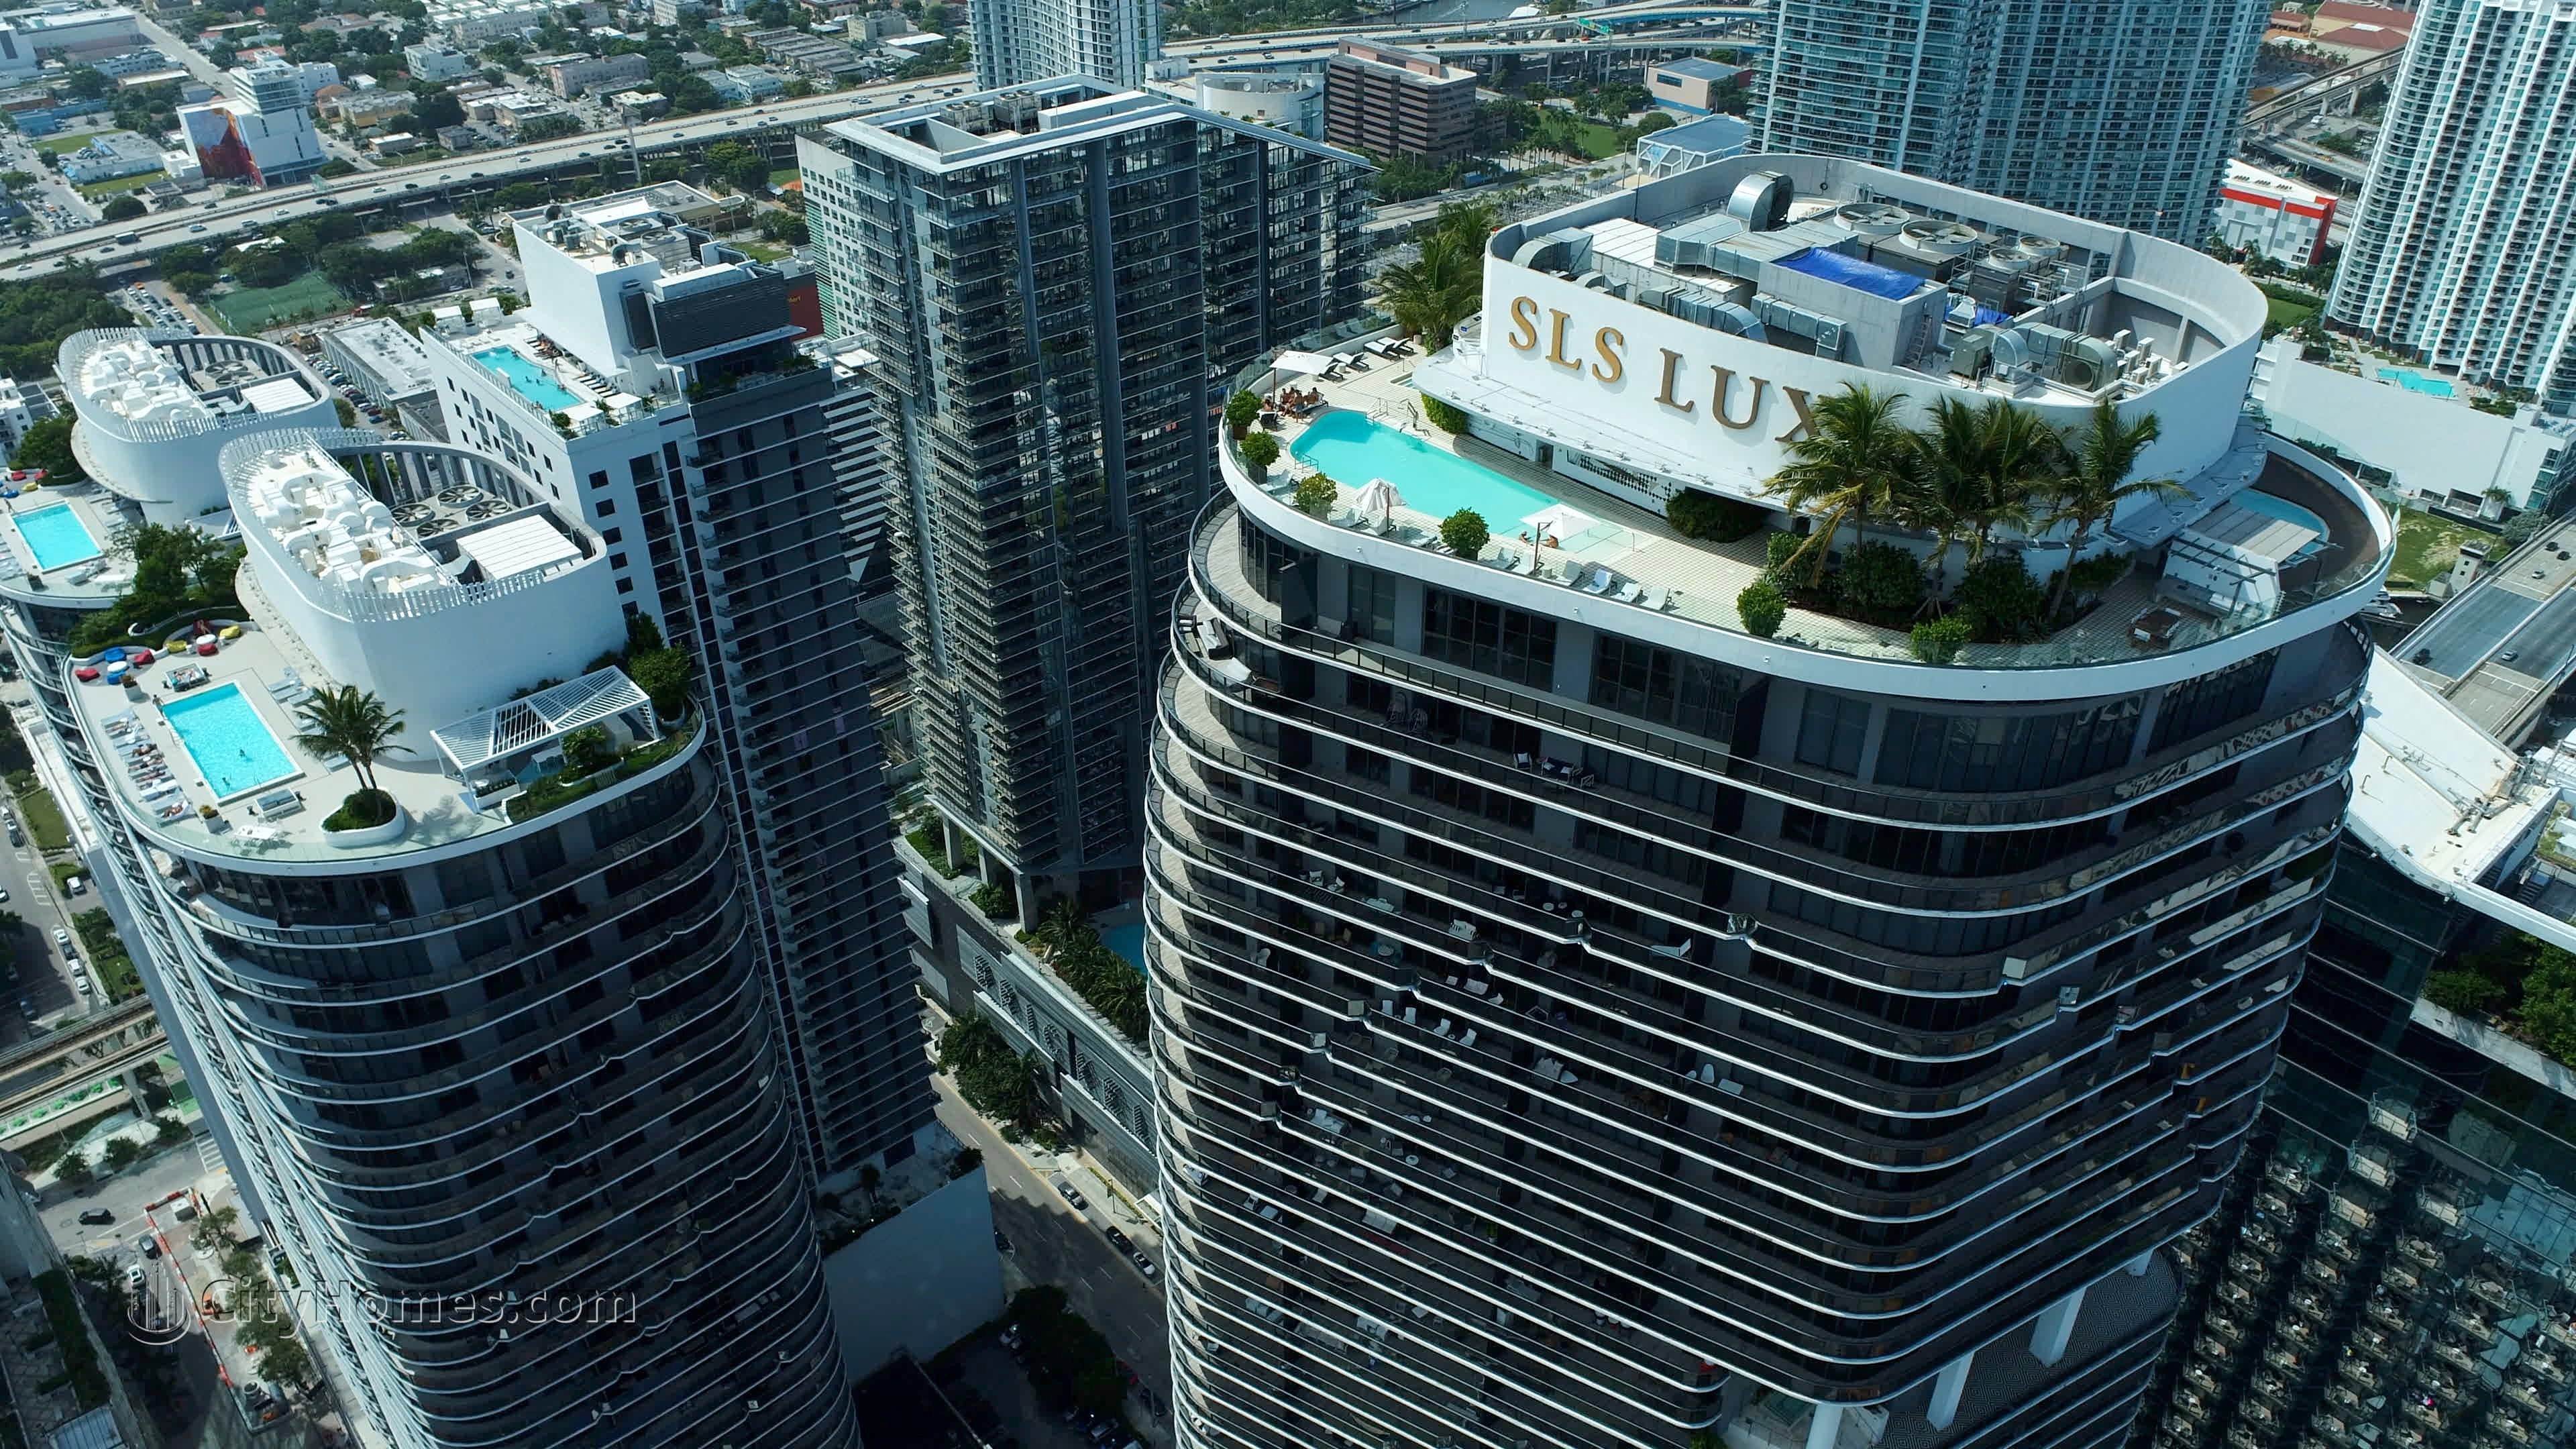 3. SLS Lux building at 801 S Miami Avenue, Miami, FL 33139